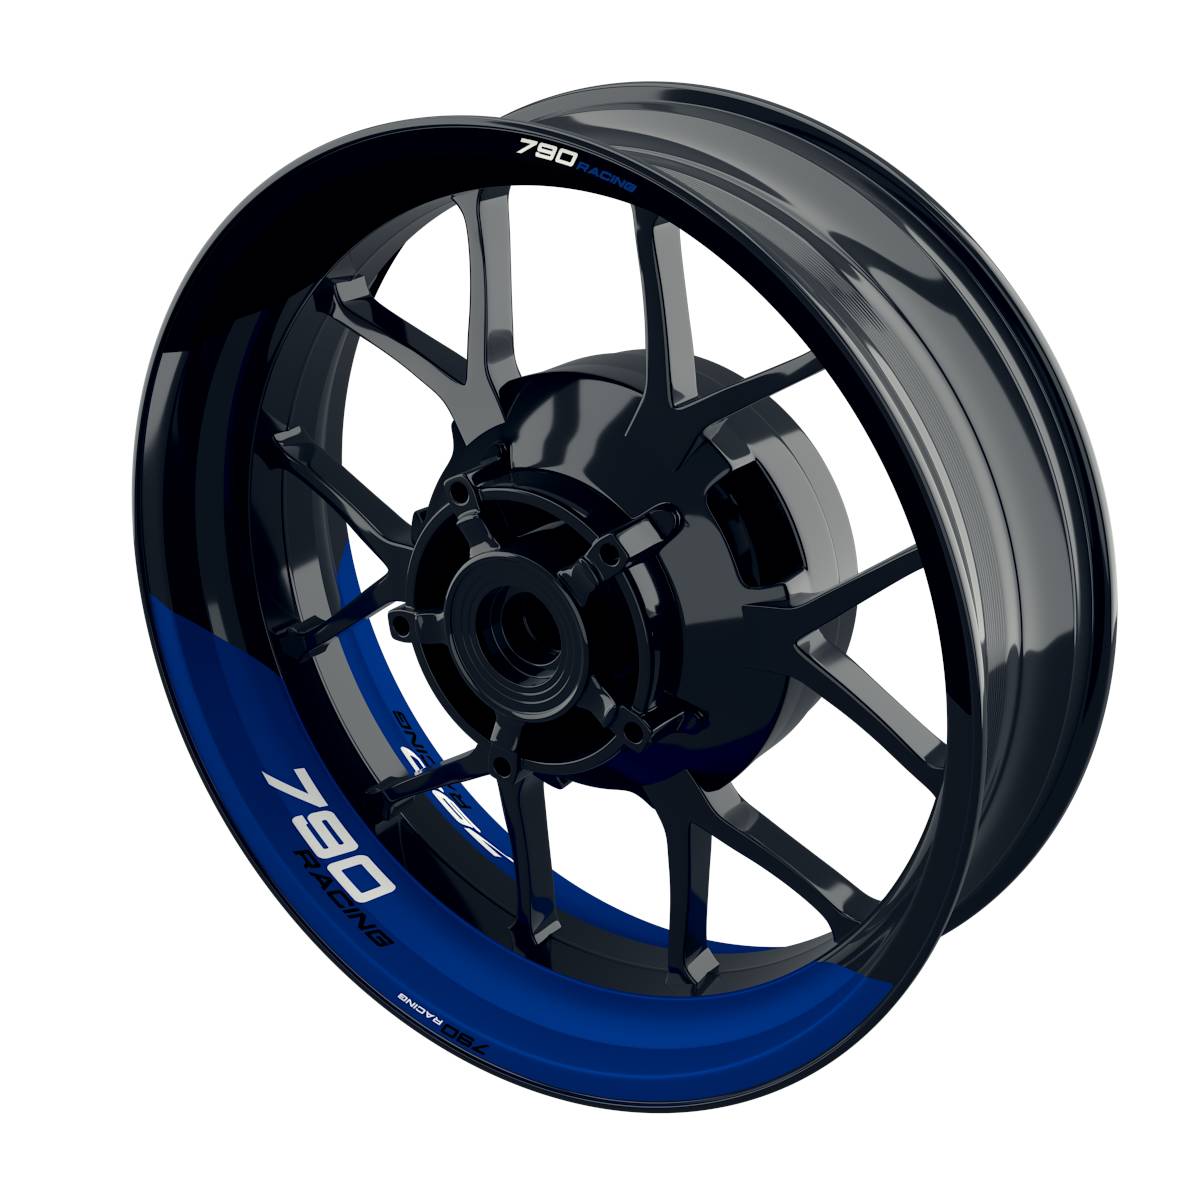 Racing 790 halb halb Rim Decals Wheelsticker Premium splitted